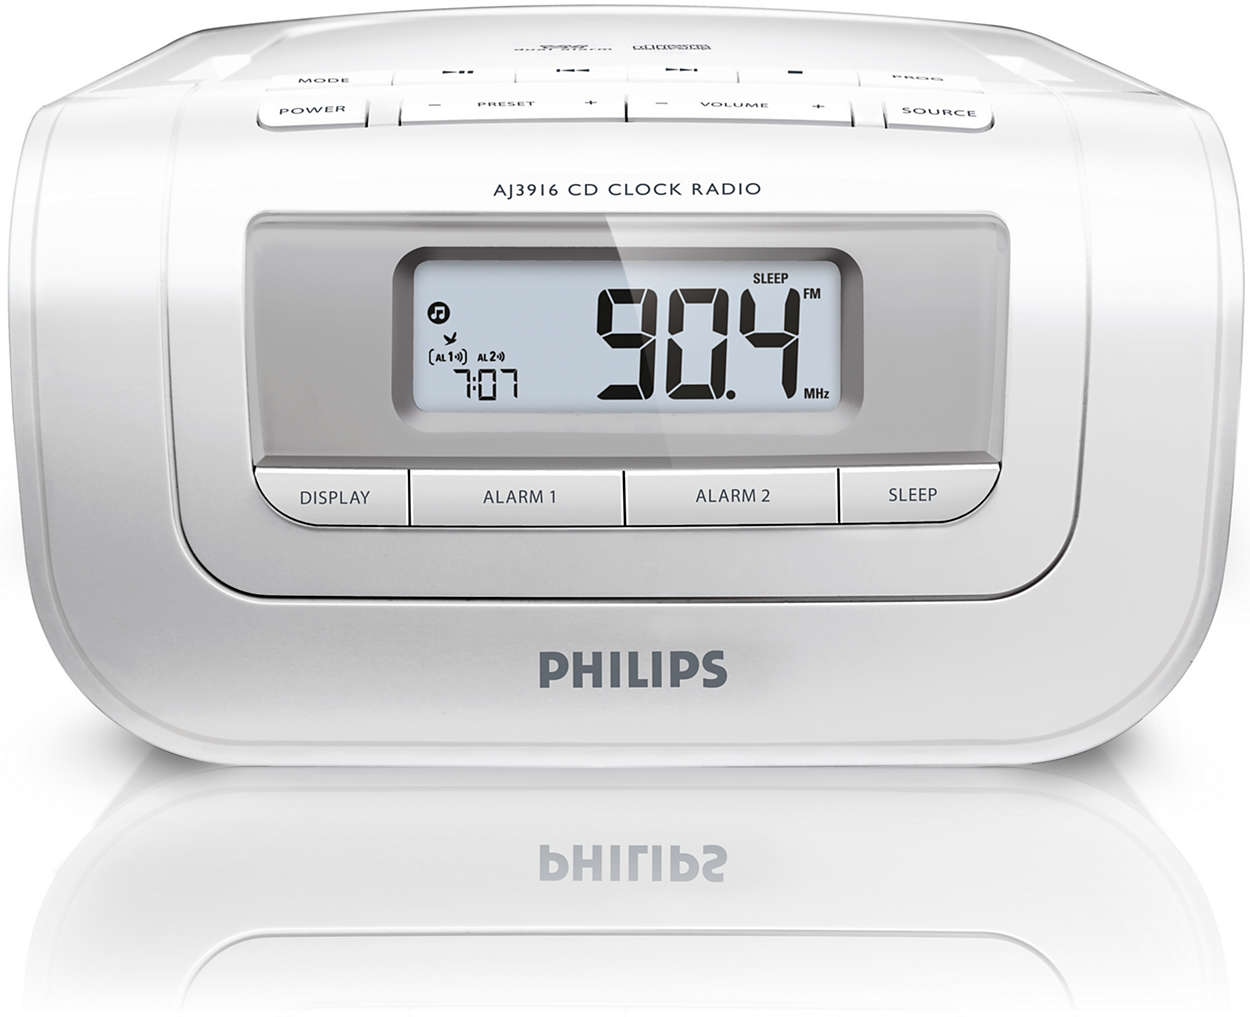 Описание филипс. Радиобудильник Philips AJ 7000. Часы радио Philips c95. Радиобудильник Philips tar4406, белый. Радиобудильник Philips tar4406/12 белый.